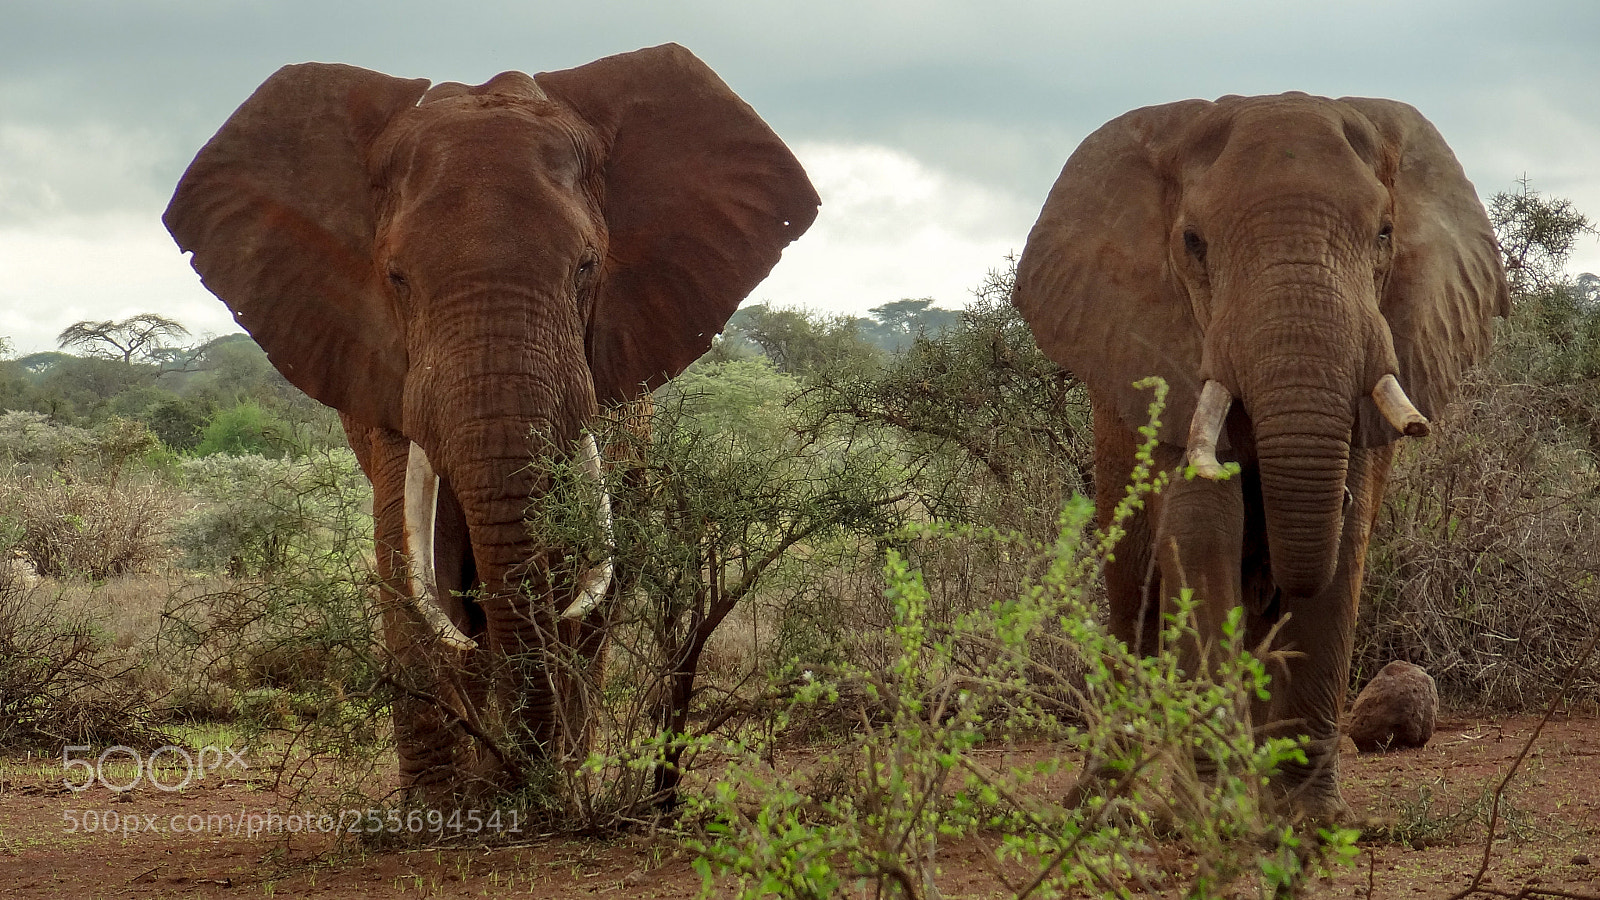 Sony Cyber-shot DSC-HX9V sample photo. Kenya elephant photography